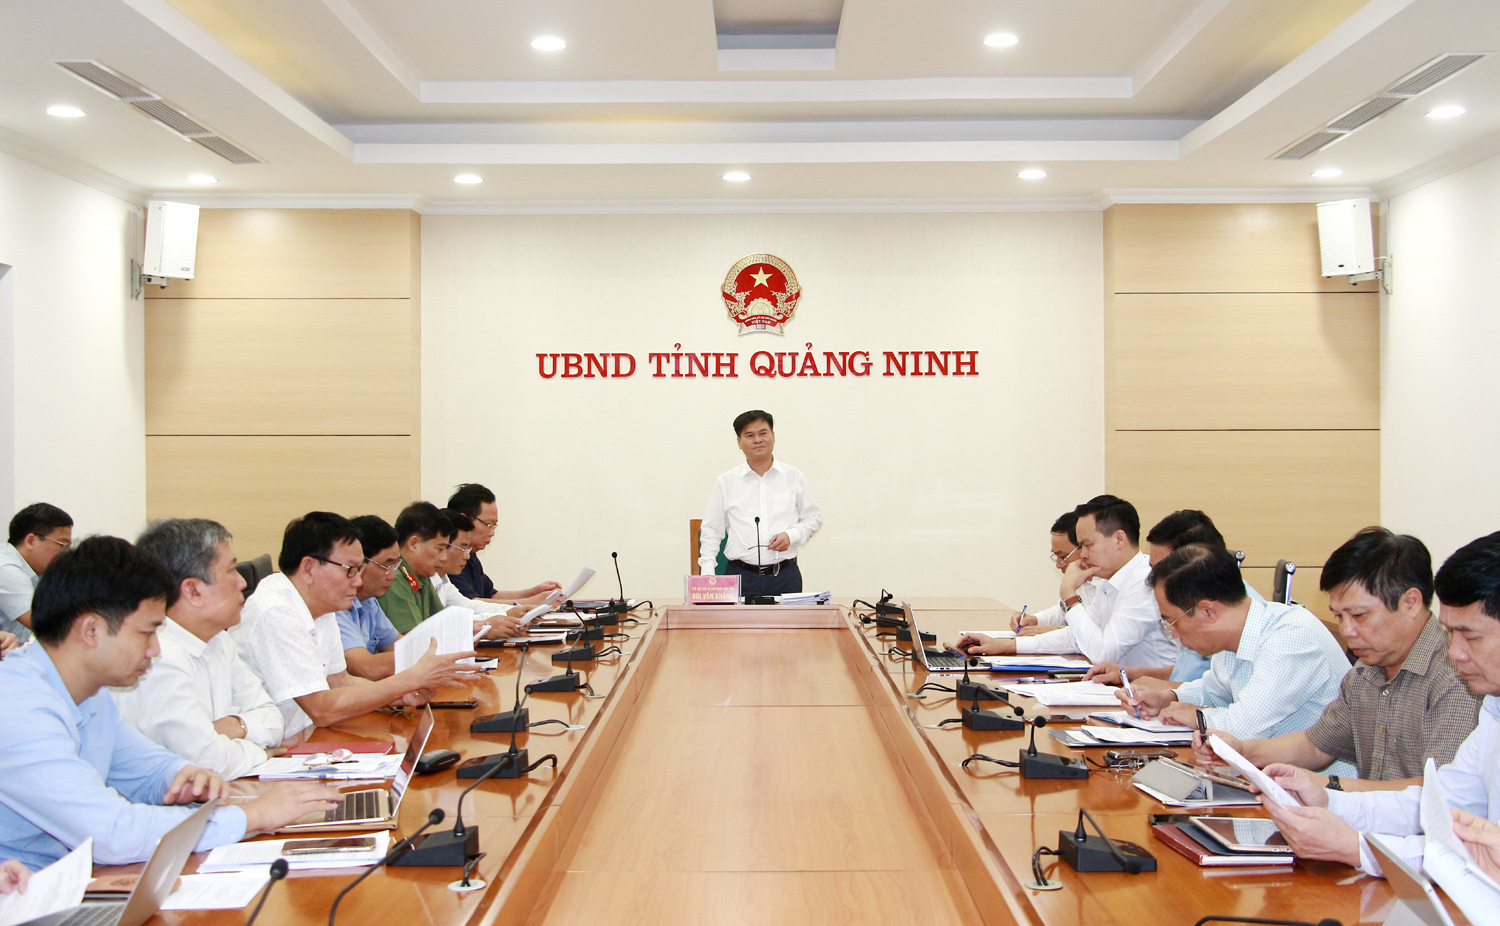 Đồng chí Bùi Văn Khắng, Phó Chủ tịch UBND tỉnh, chủ trì hội nghị.